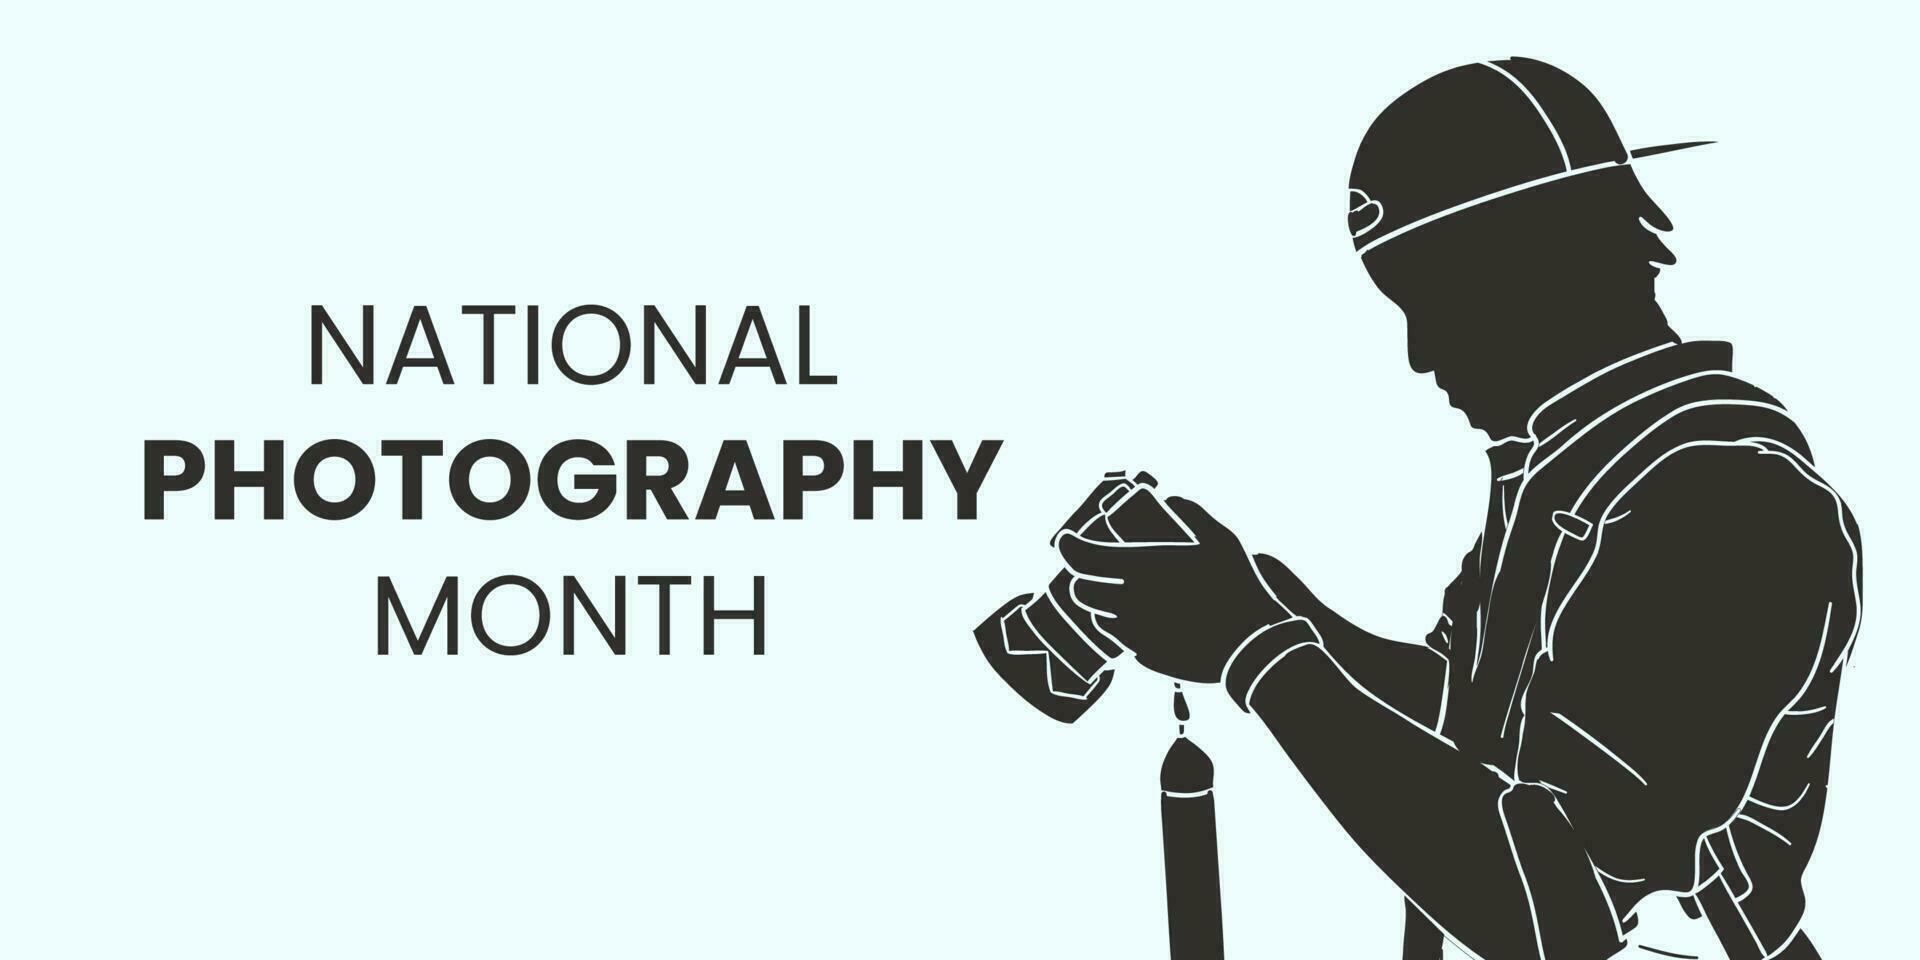 nationell fotografi månad, aning för affisch, baner, flygblad eller vykort vektor illustration.